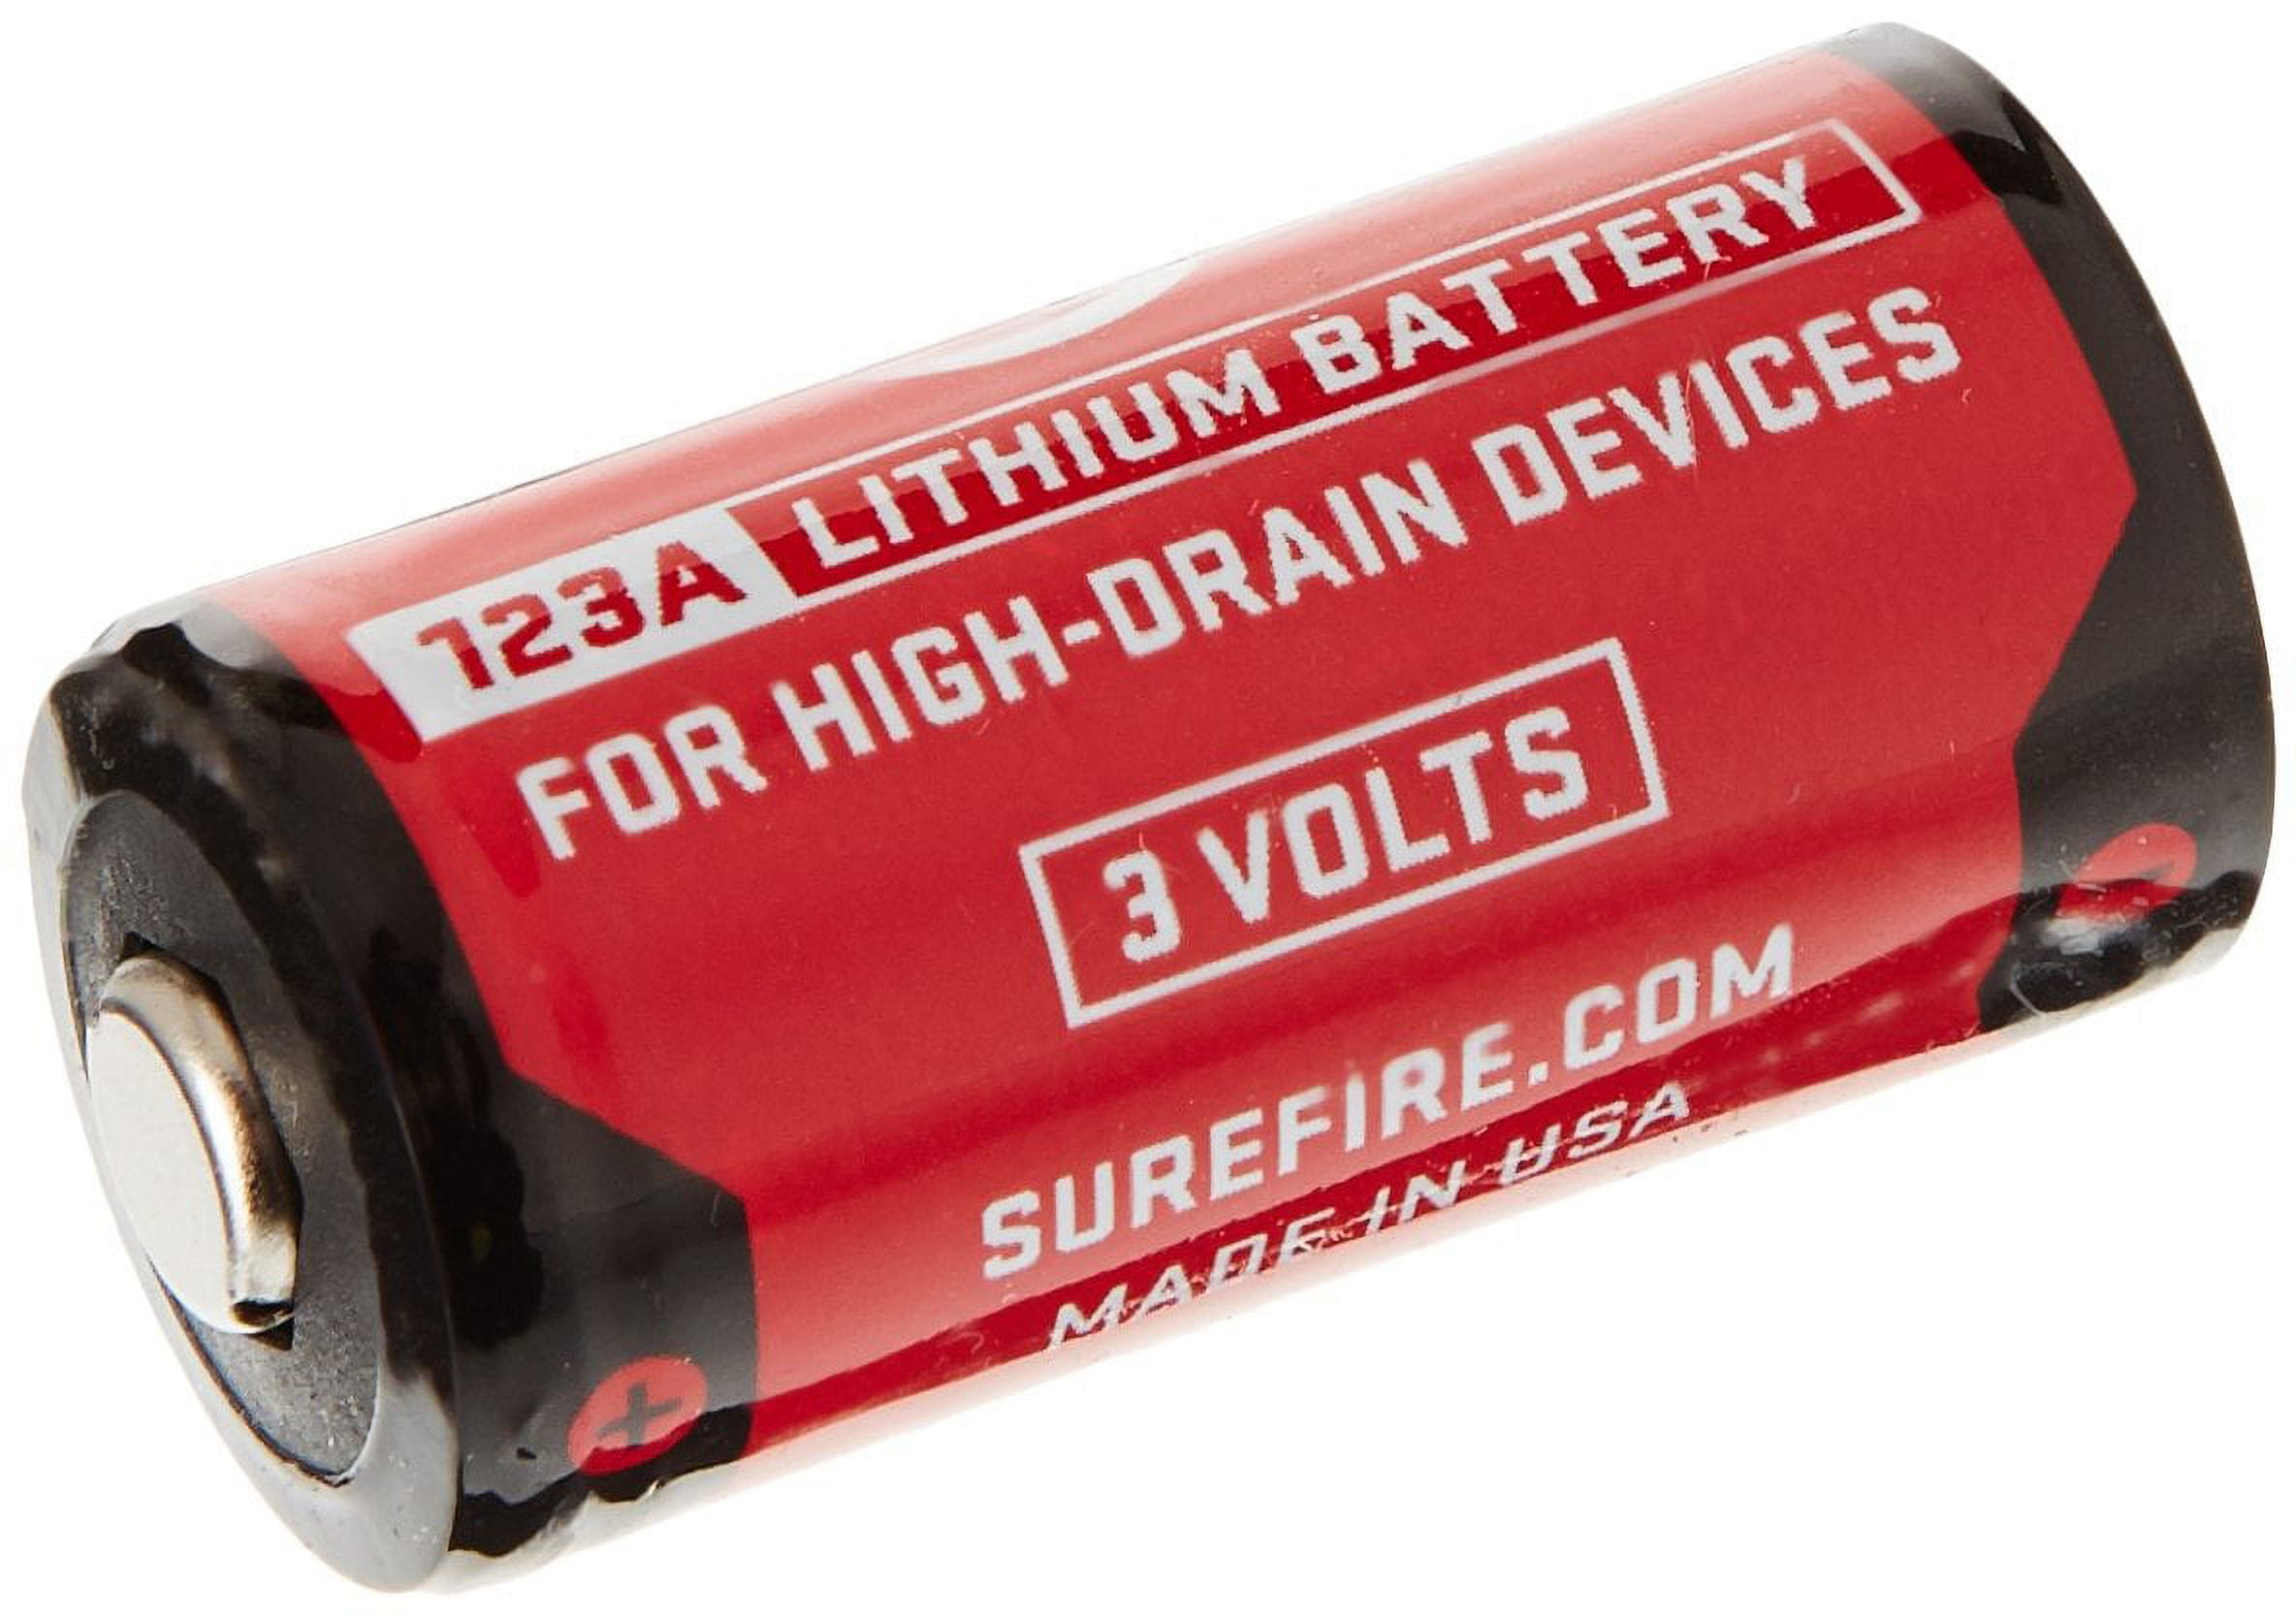 SureFire SureFire 123A 3v Lithium Battery 4PK SF123A Dark Night Outdoors.com